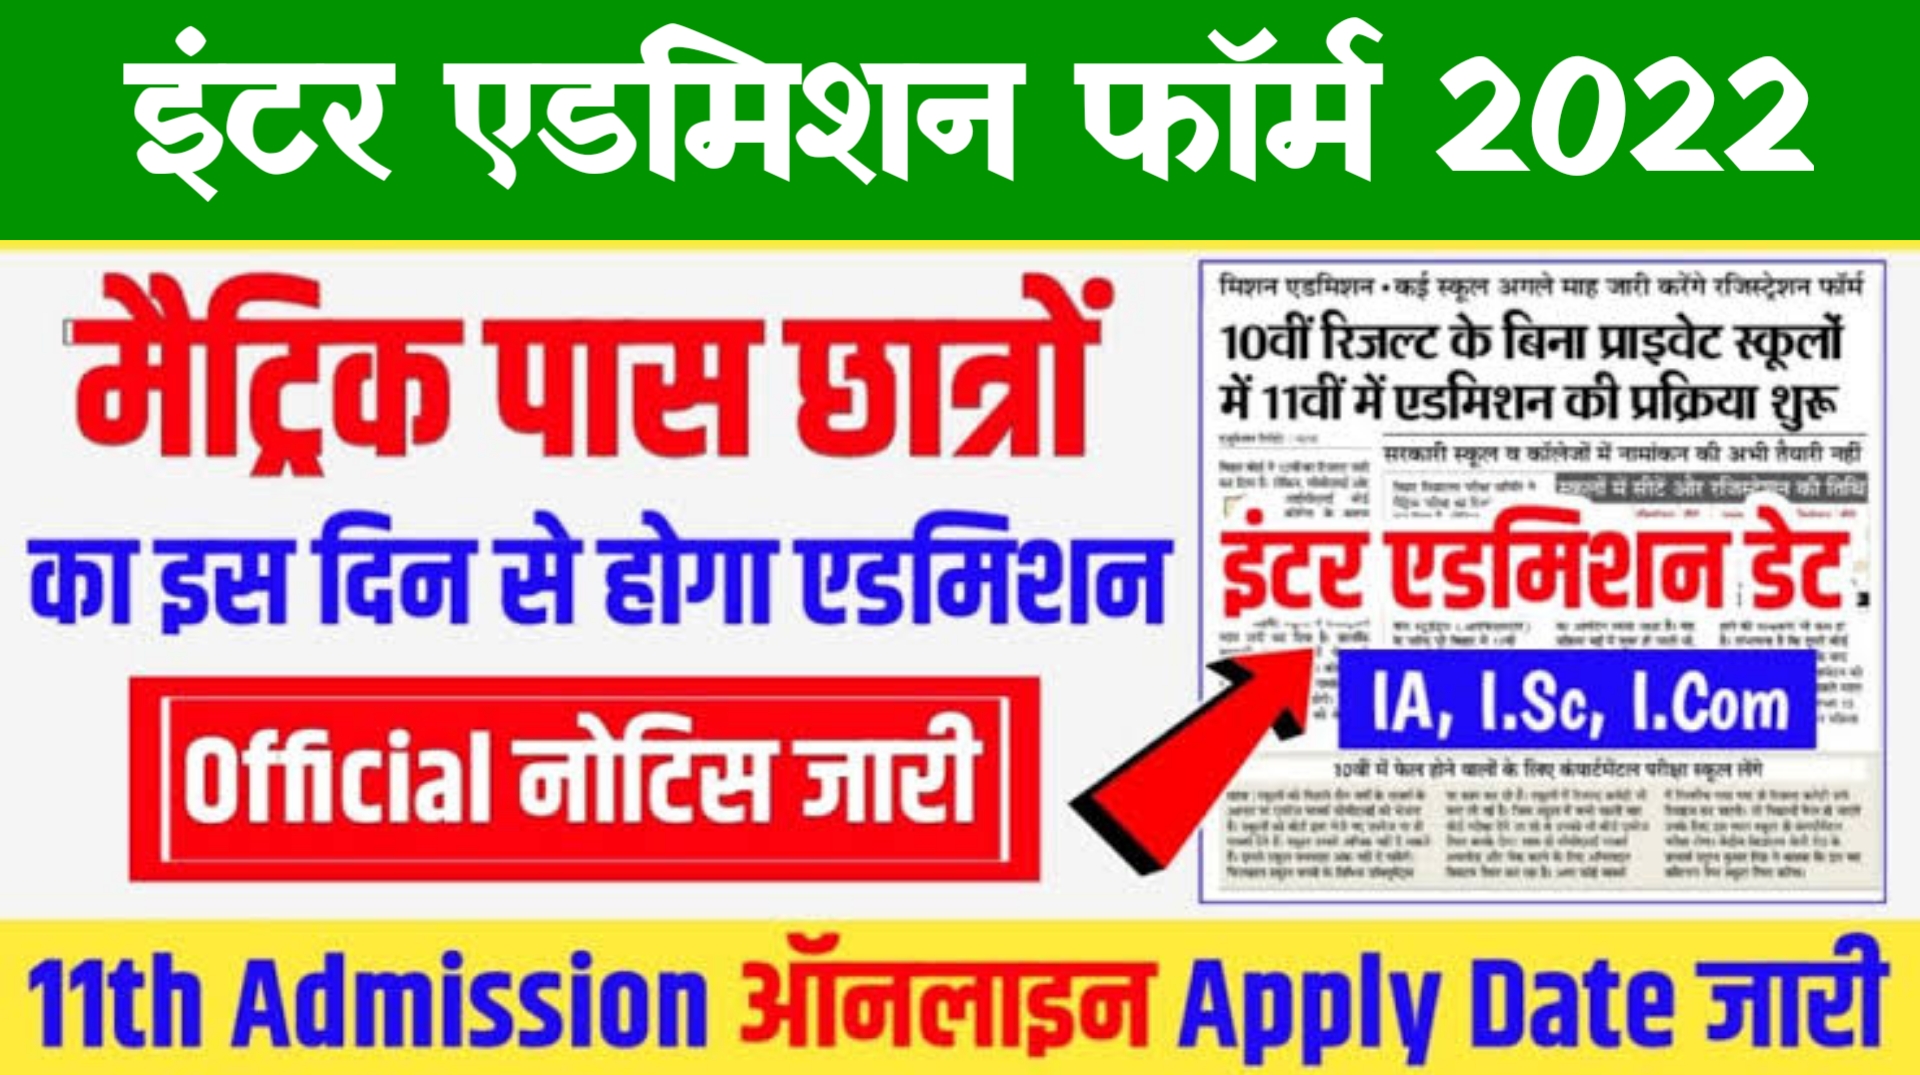 Bihar Board Inter Admission Form 2022 : इंटर में एडमिशन शुरू ऐसे भरे फॉर्म...